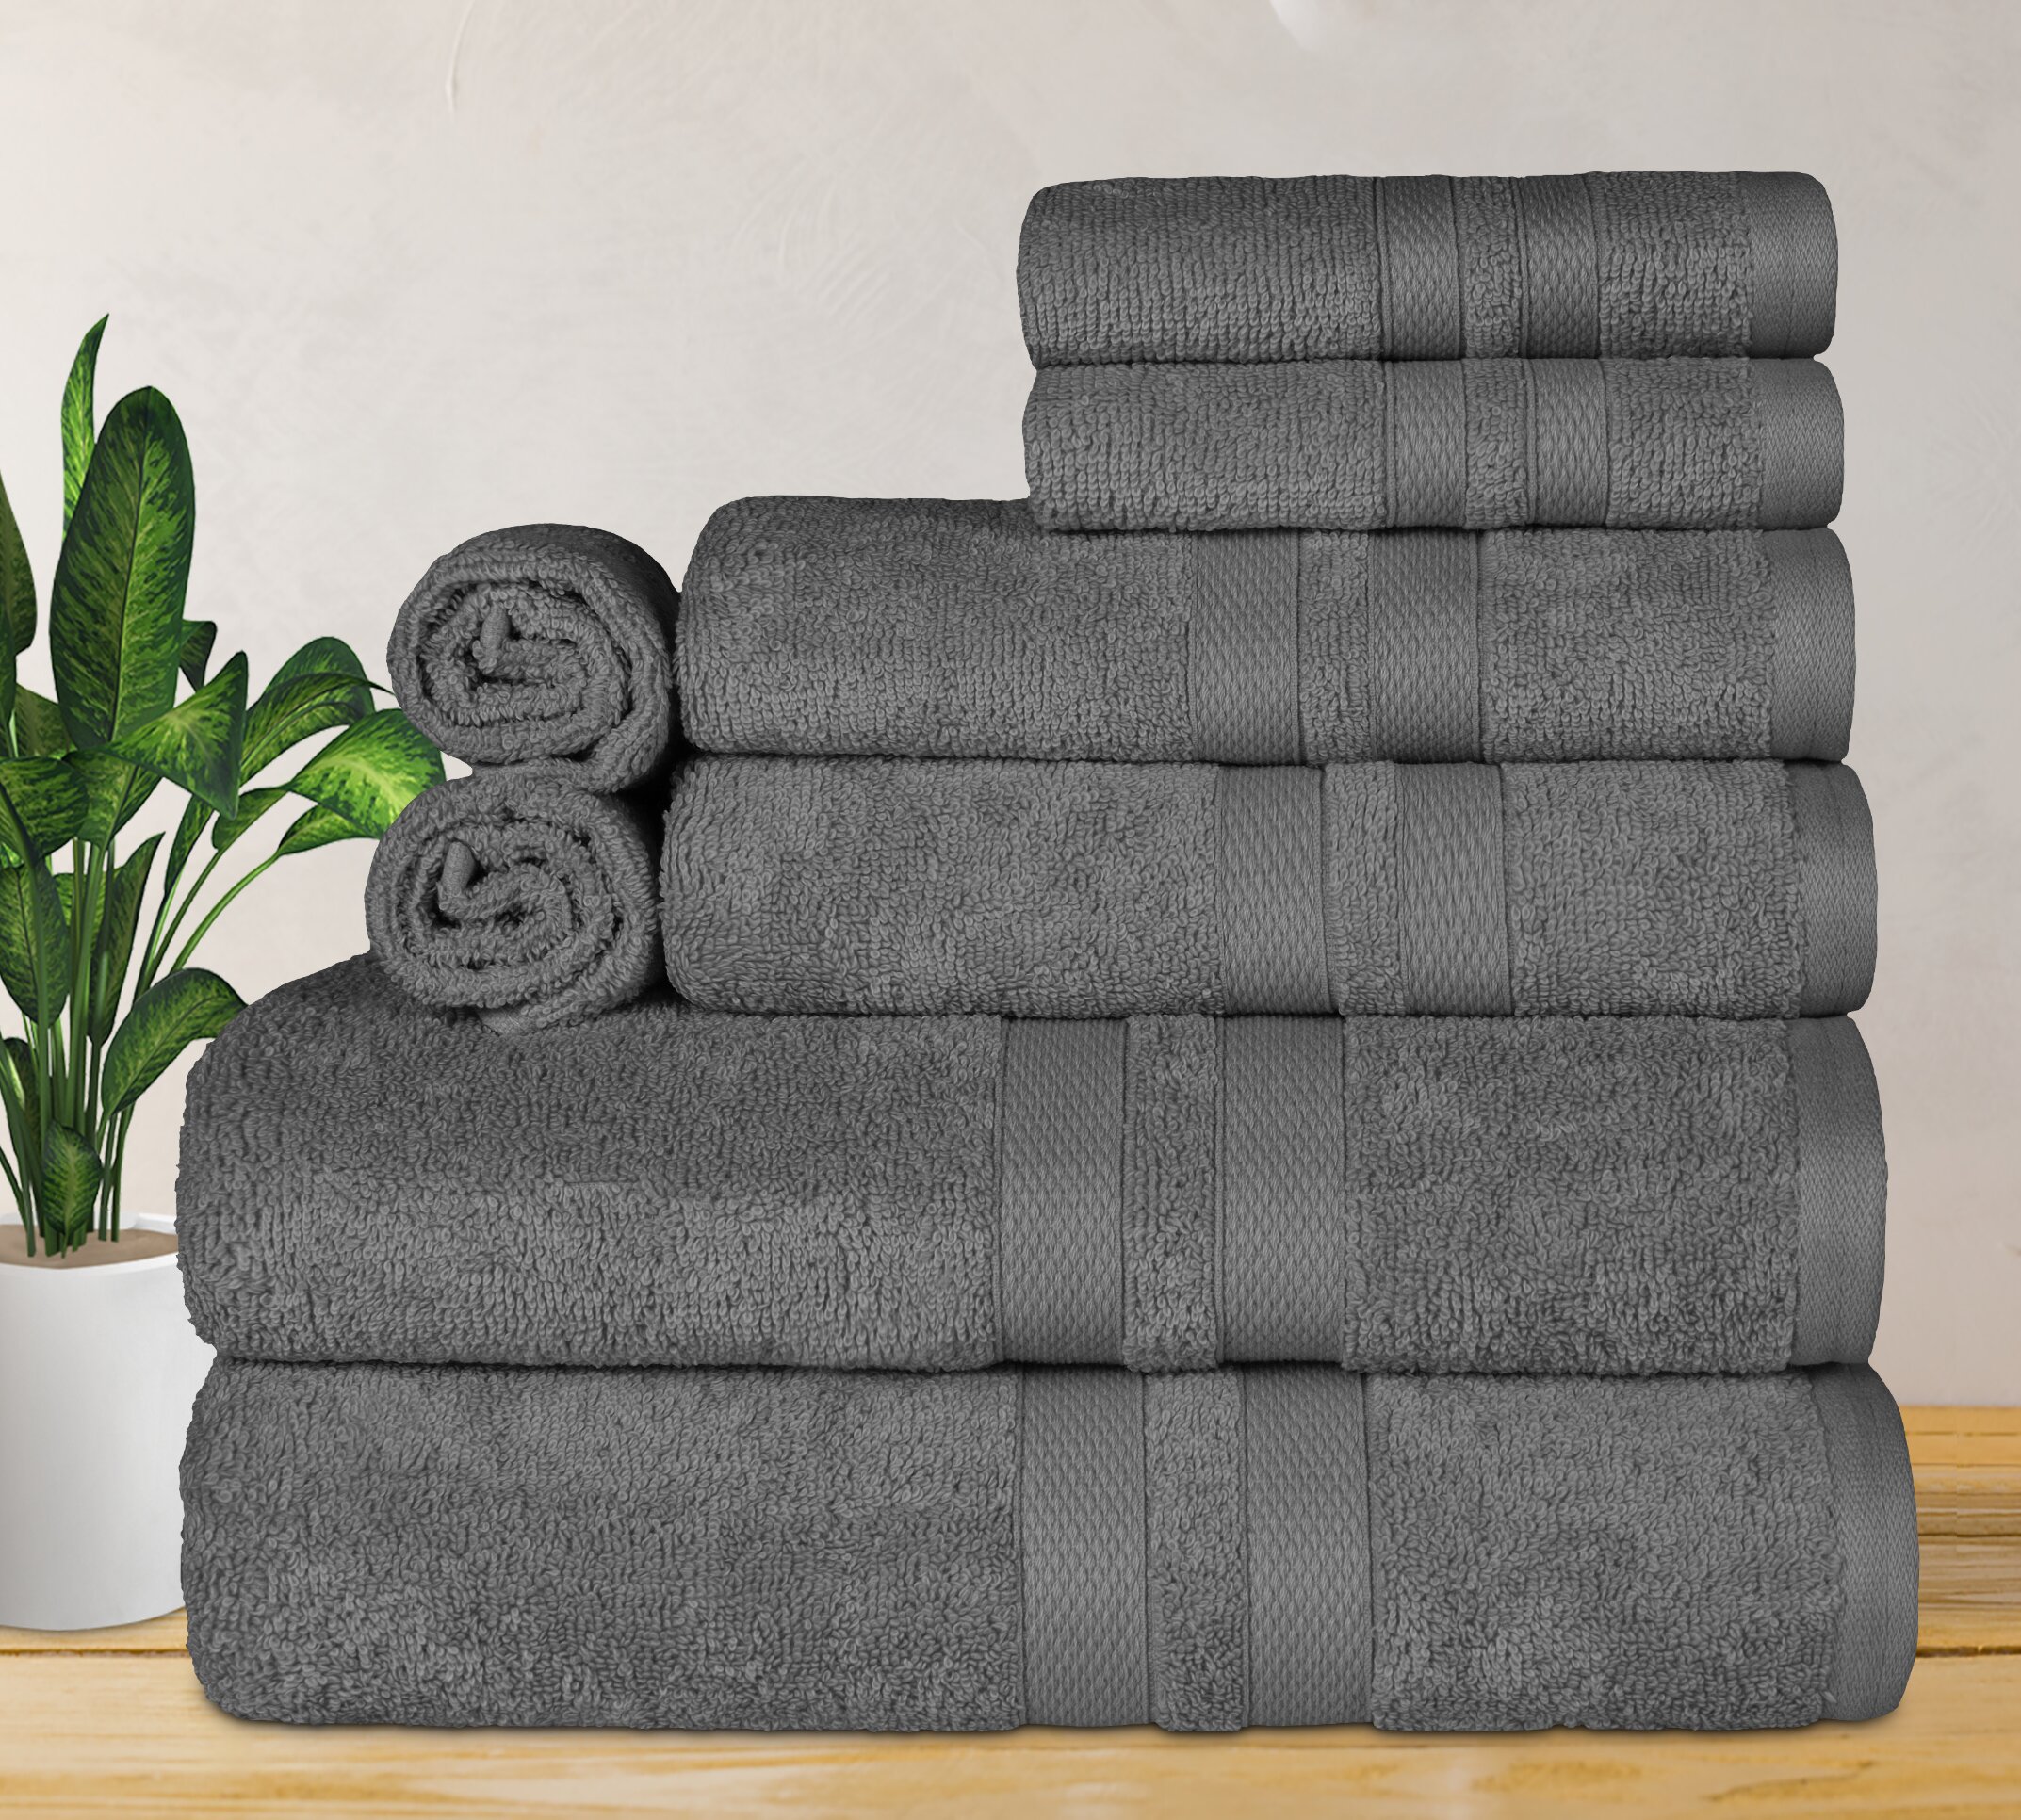 https://assets.wfcdn.com/im/68518871/compr-r85/1563/156374090/saige-ultra-soft-quick-drying-8-piece-cotton-towel-set.jpg